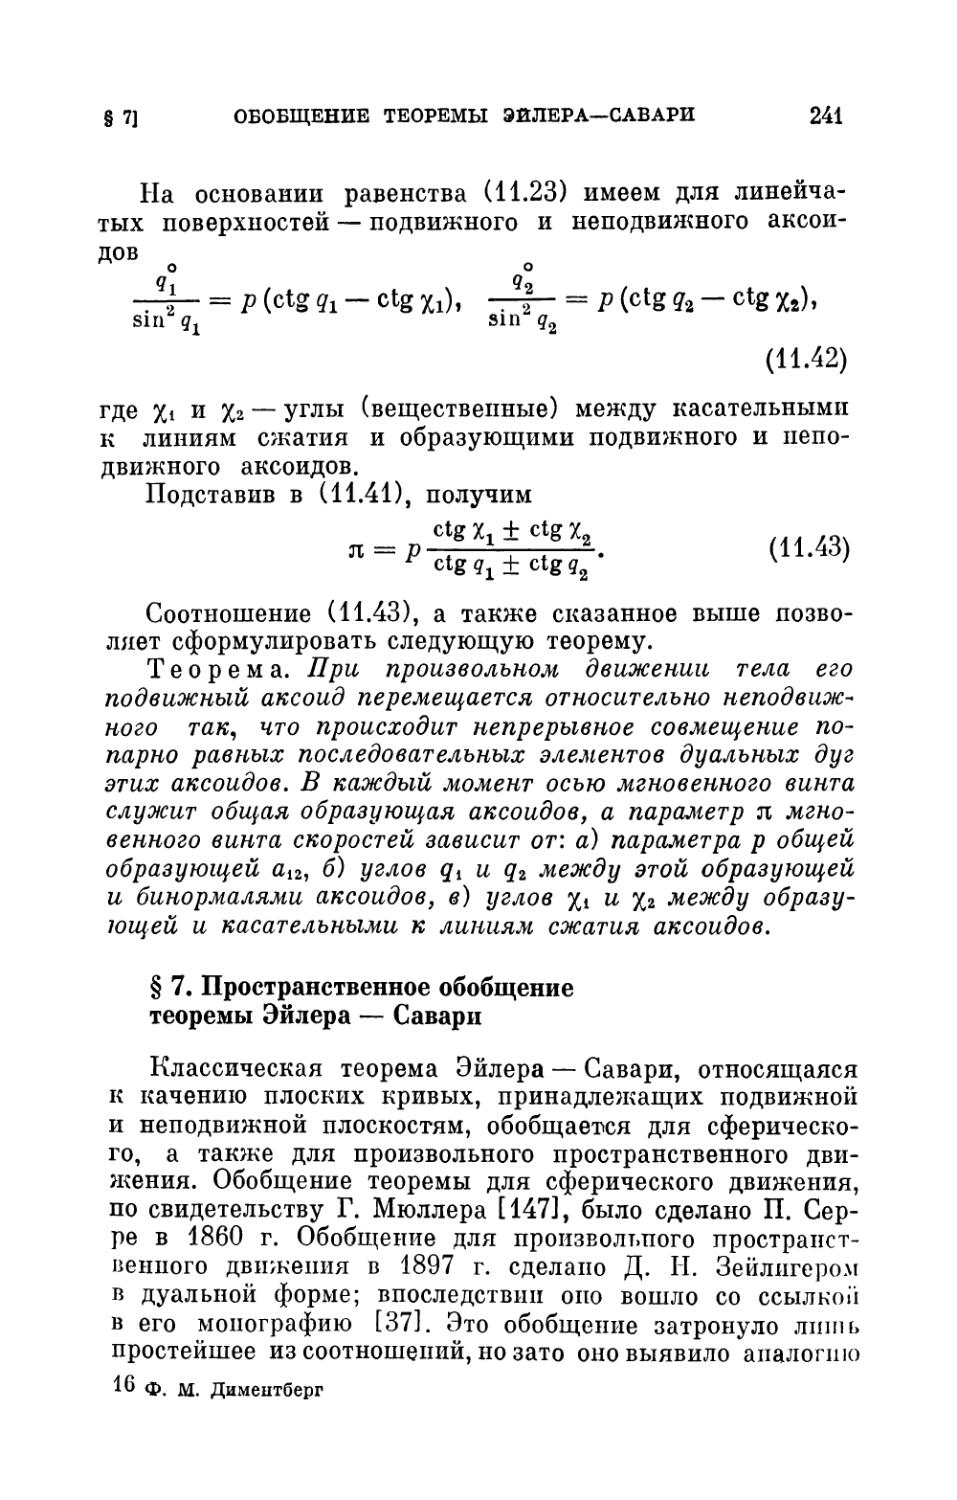 § 7. Пространственное обобщение теоремы Эйлера — Савари